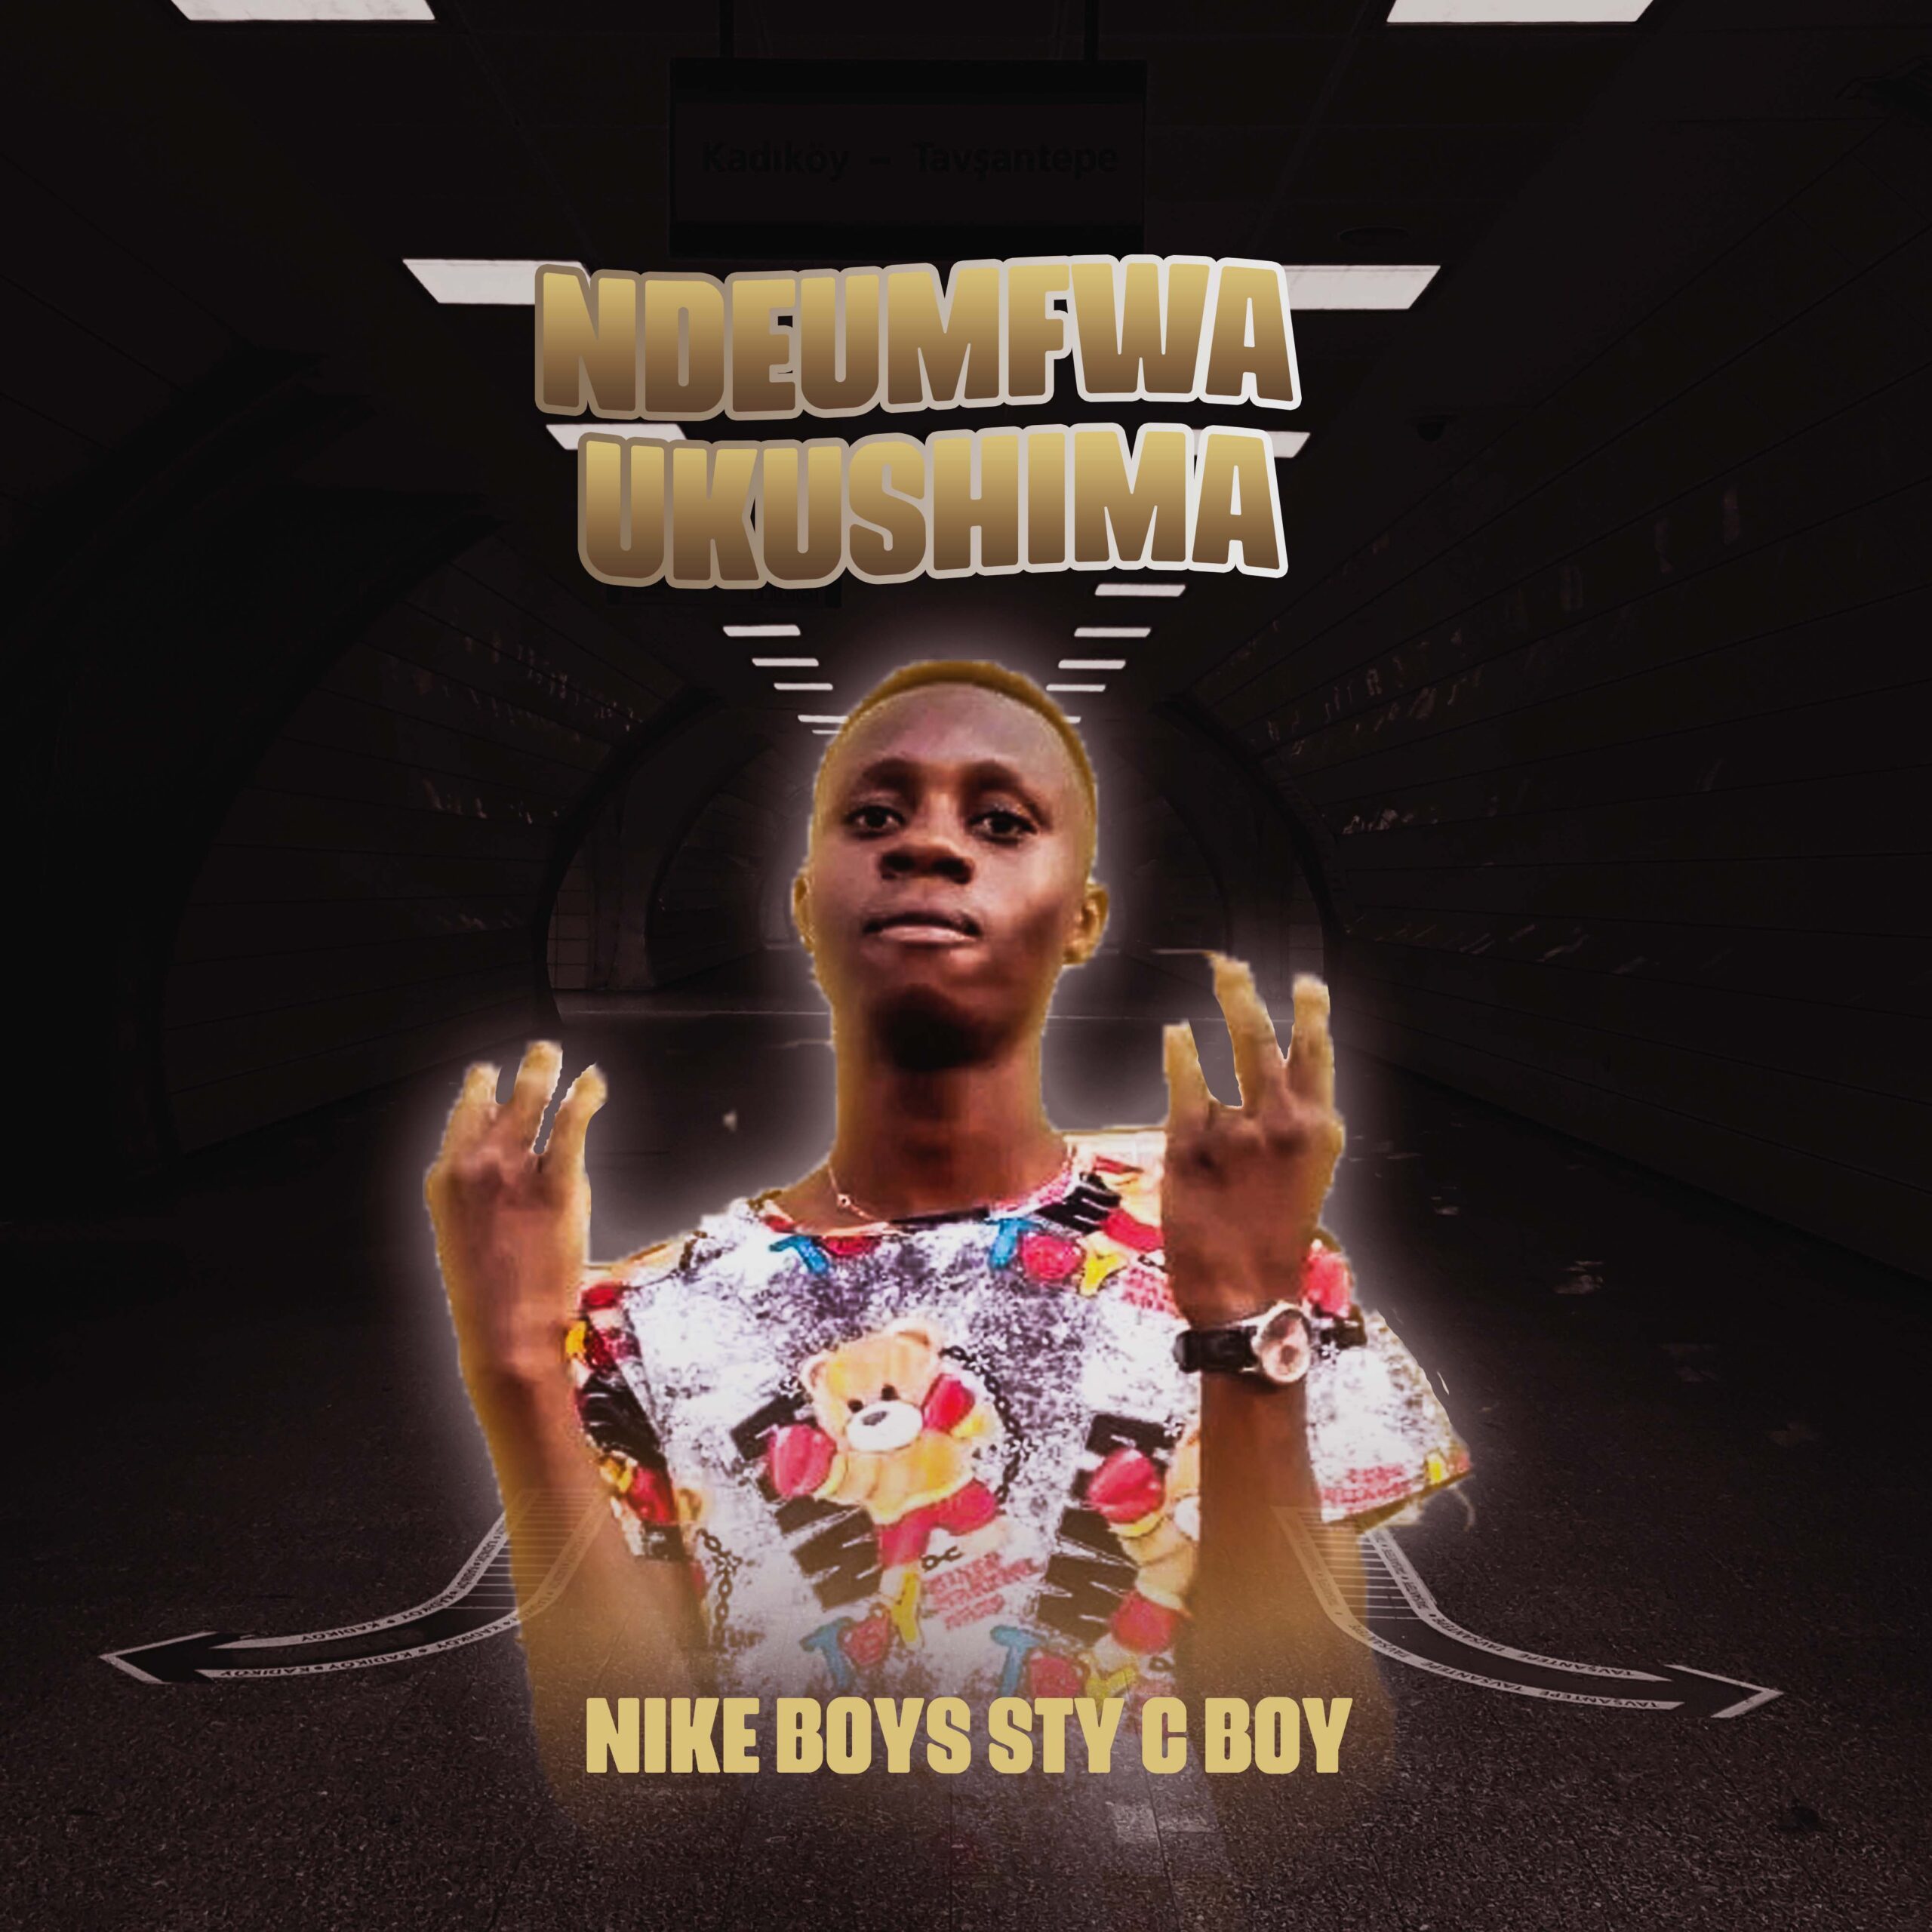 Nike Boys Sty C Boy - Ndeumfrwa Ukushima